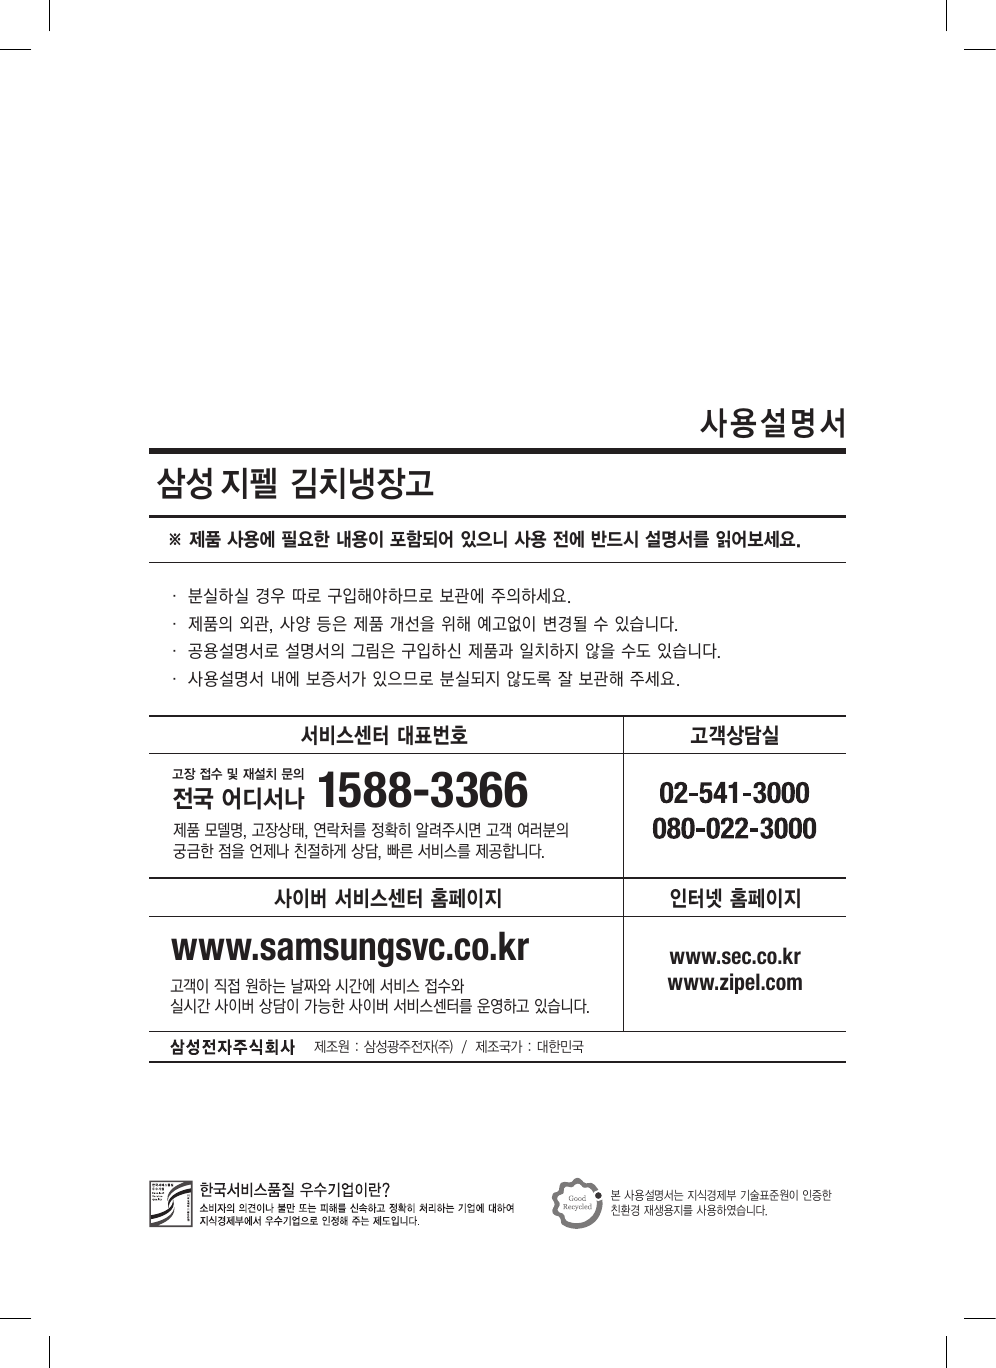 Samsung Krm314Wkcf 사용자 매뉴얼 | Manualzz